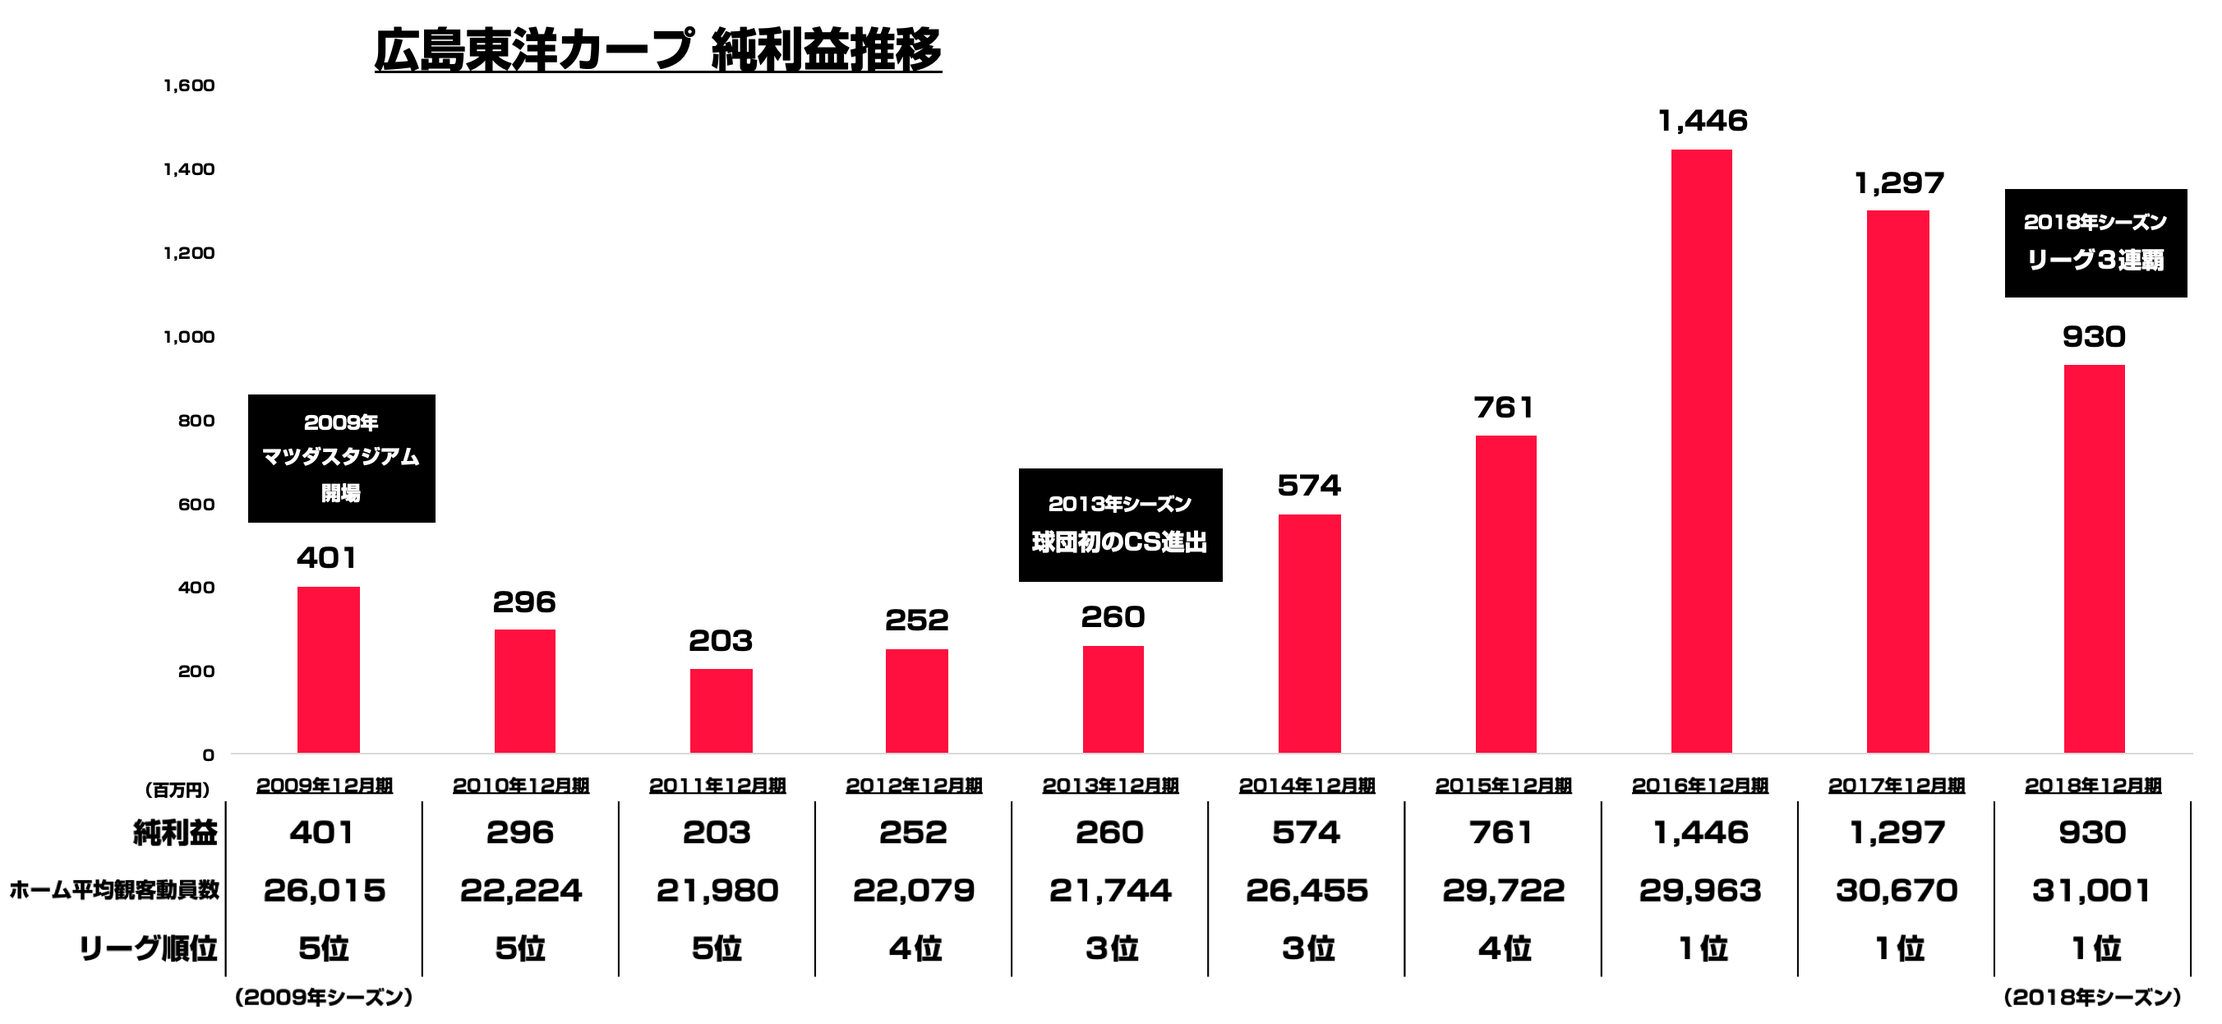 広島東洋カープは毎年どれくらいの利益を生んでいるのか